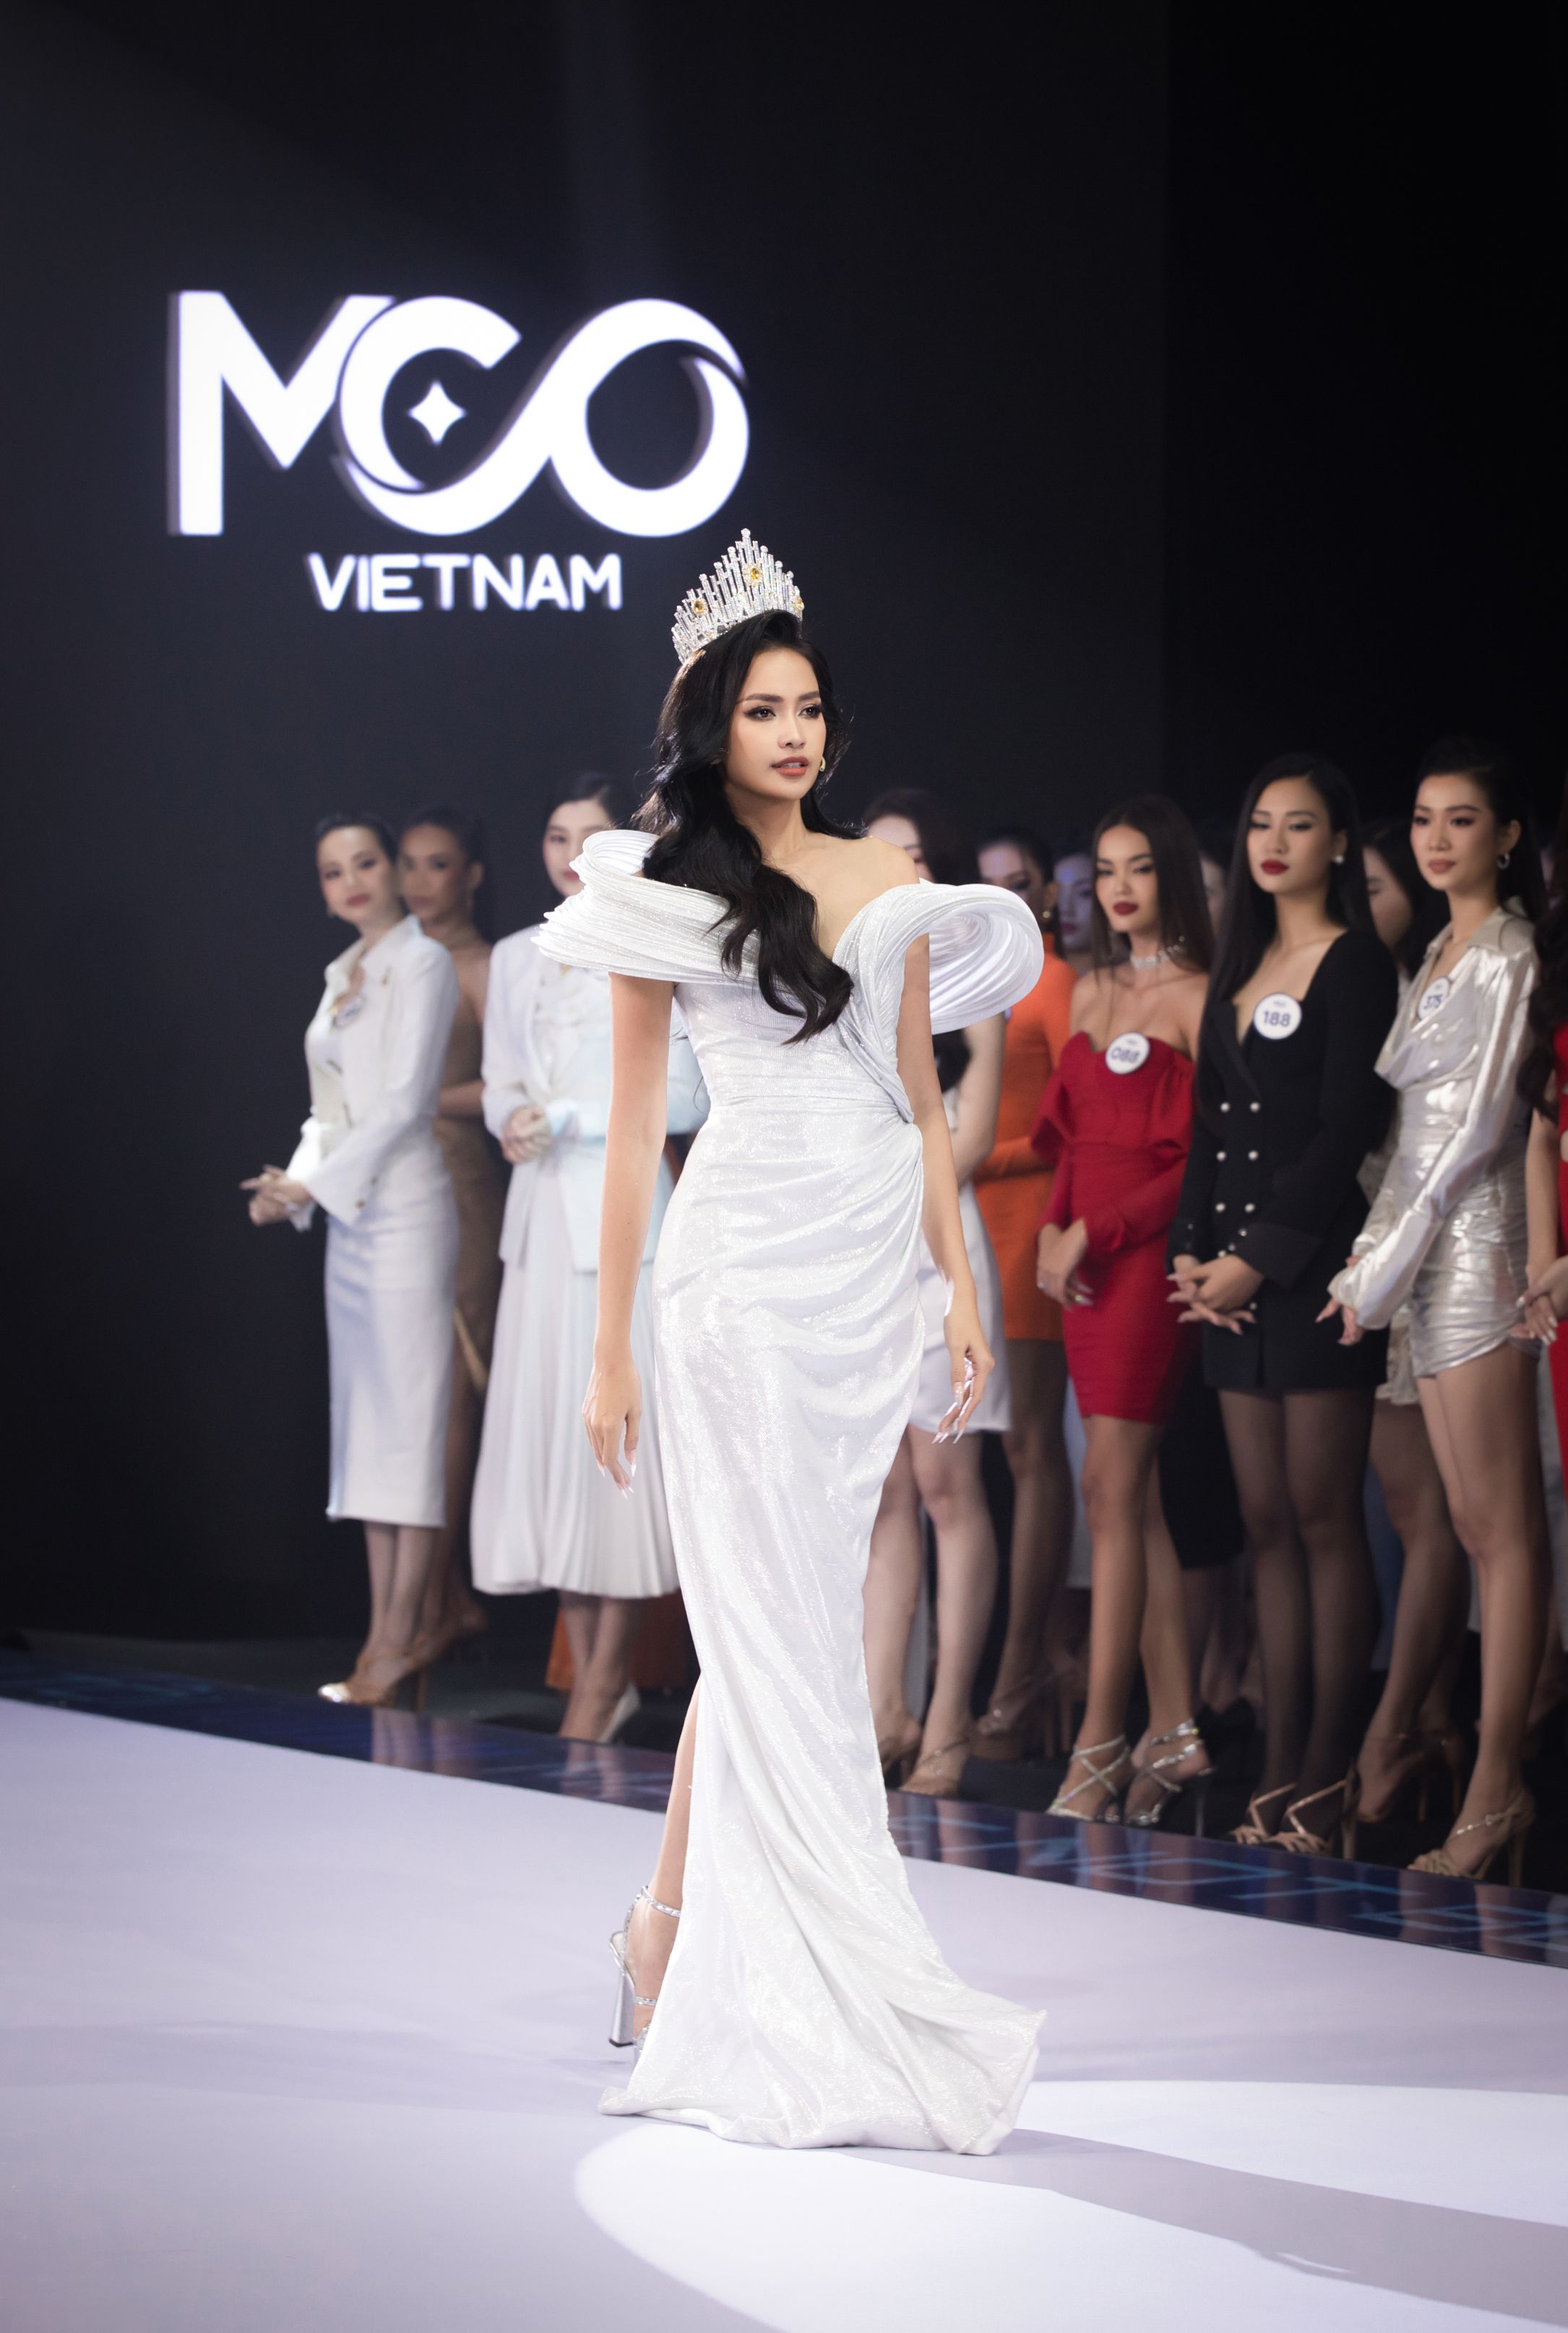 HOST HOA HẬU NGỌC CHÂU 9 Tôi là Hoa hậu Hoàn vũ Việt Nam tung trailer hứa hẹn bùng nổ cho sự trở lại